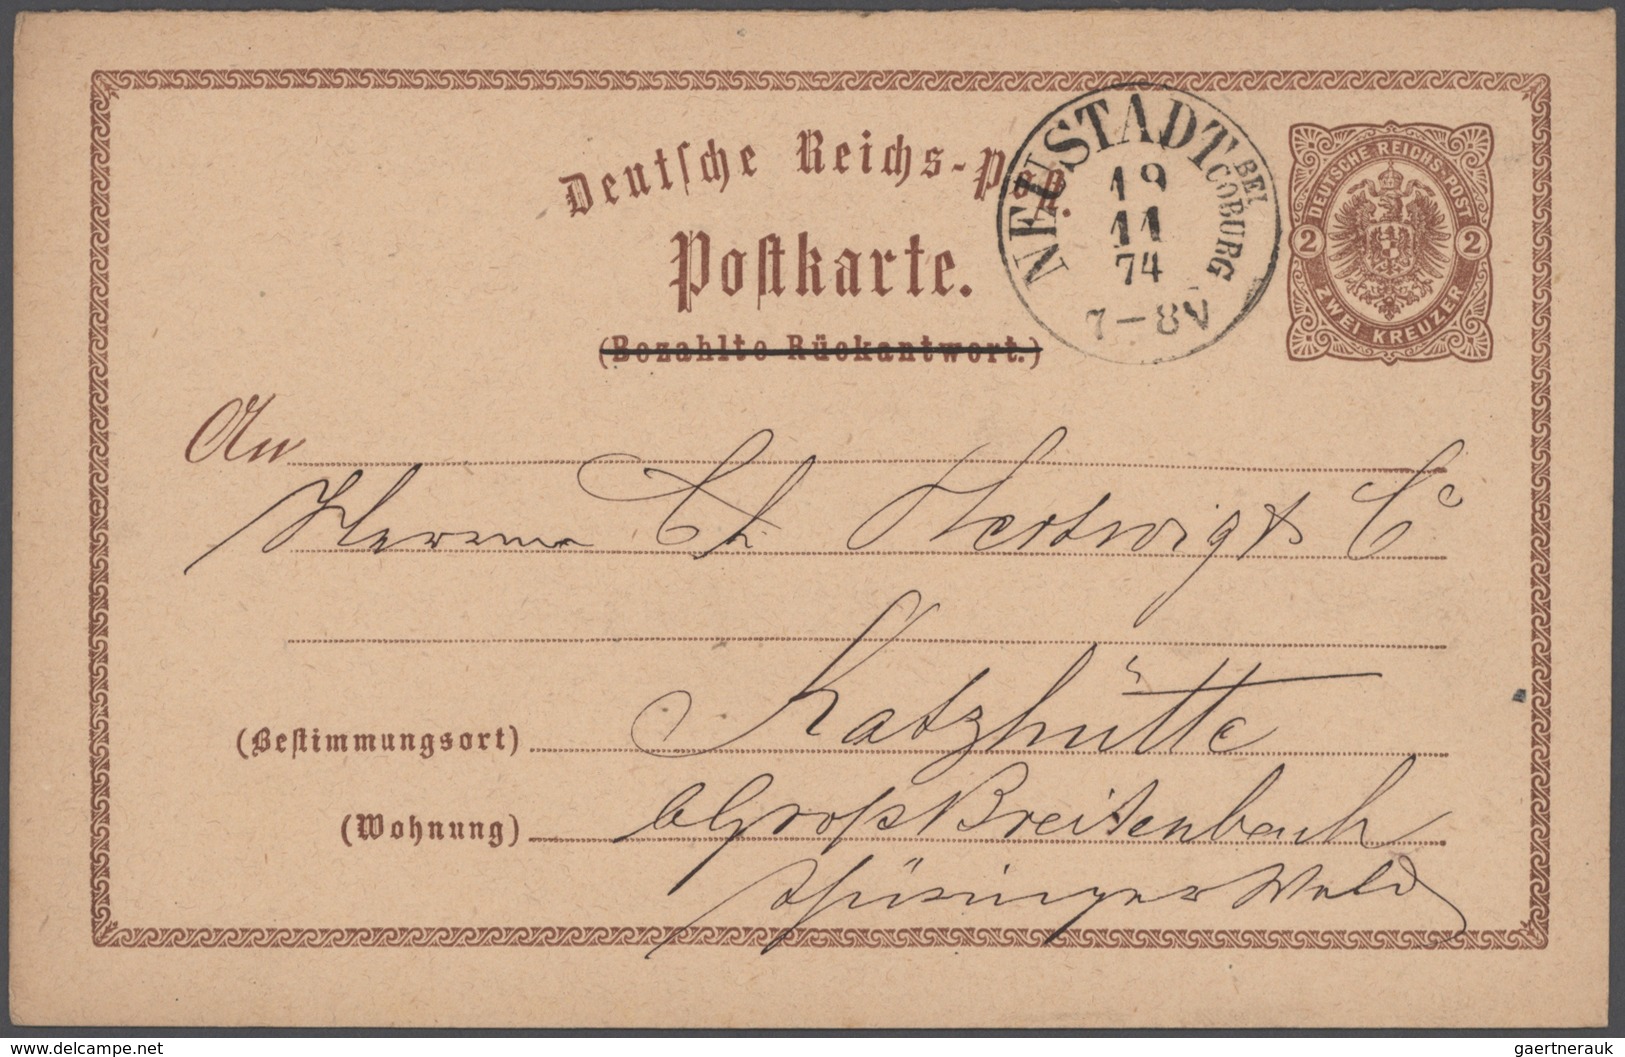 Deutsches Reich: 1872/1932, interessanter und vielseitiger Briefeposten ab Brustschildausgaben bis E